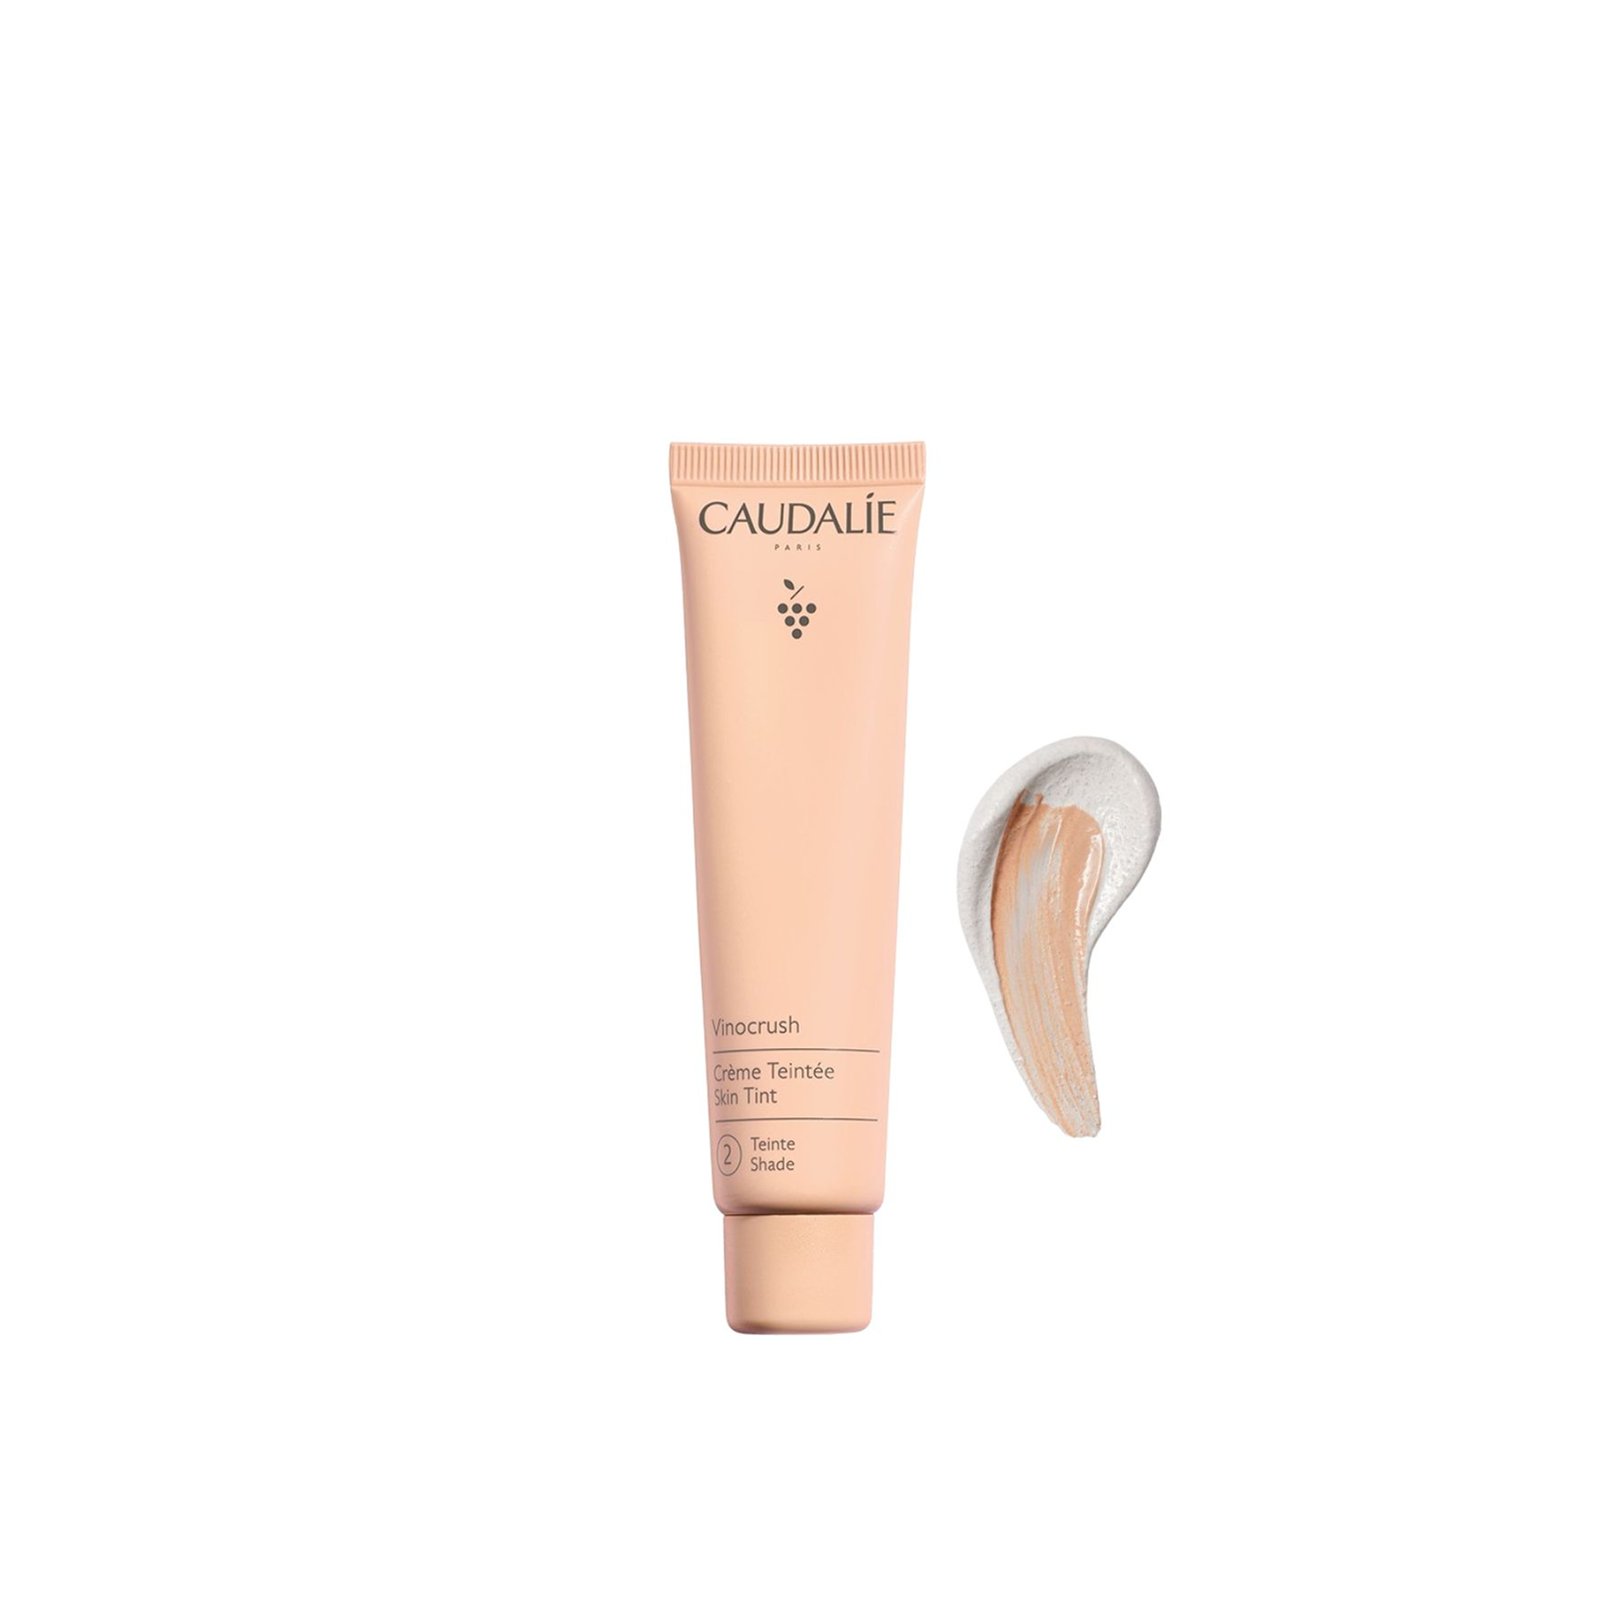 Caudalie Vinocrush Skin Tinted Cream 2 30ml